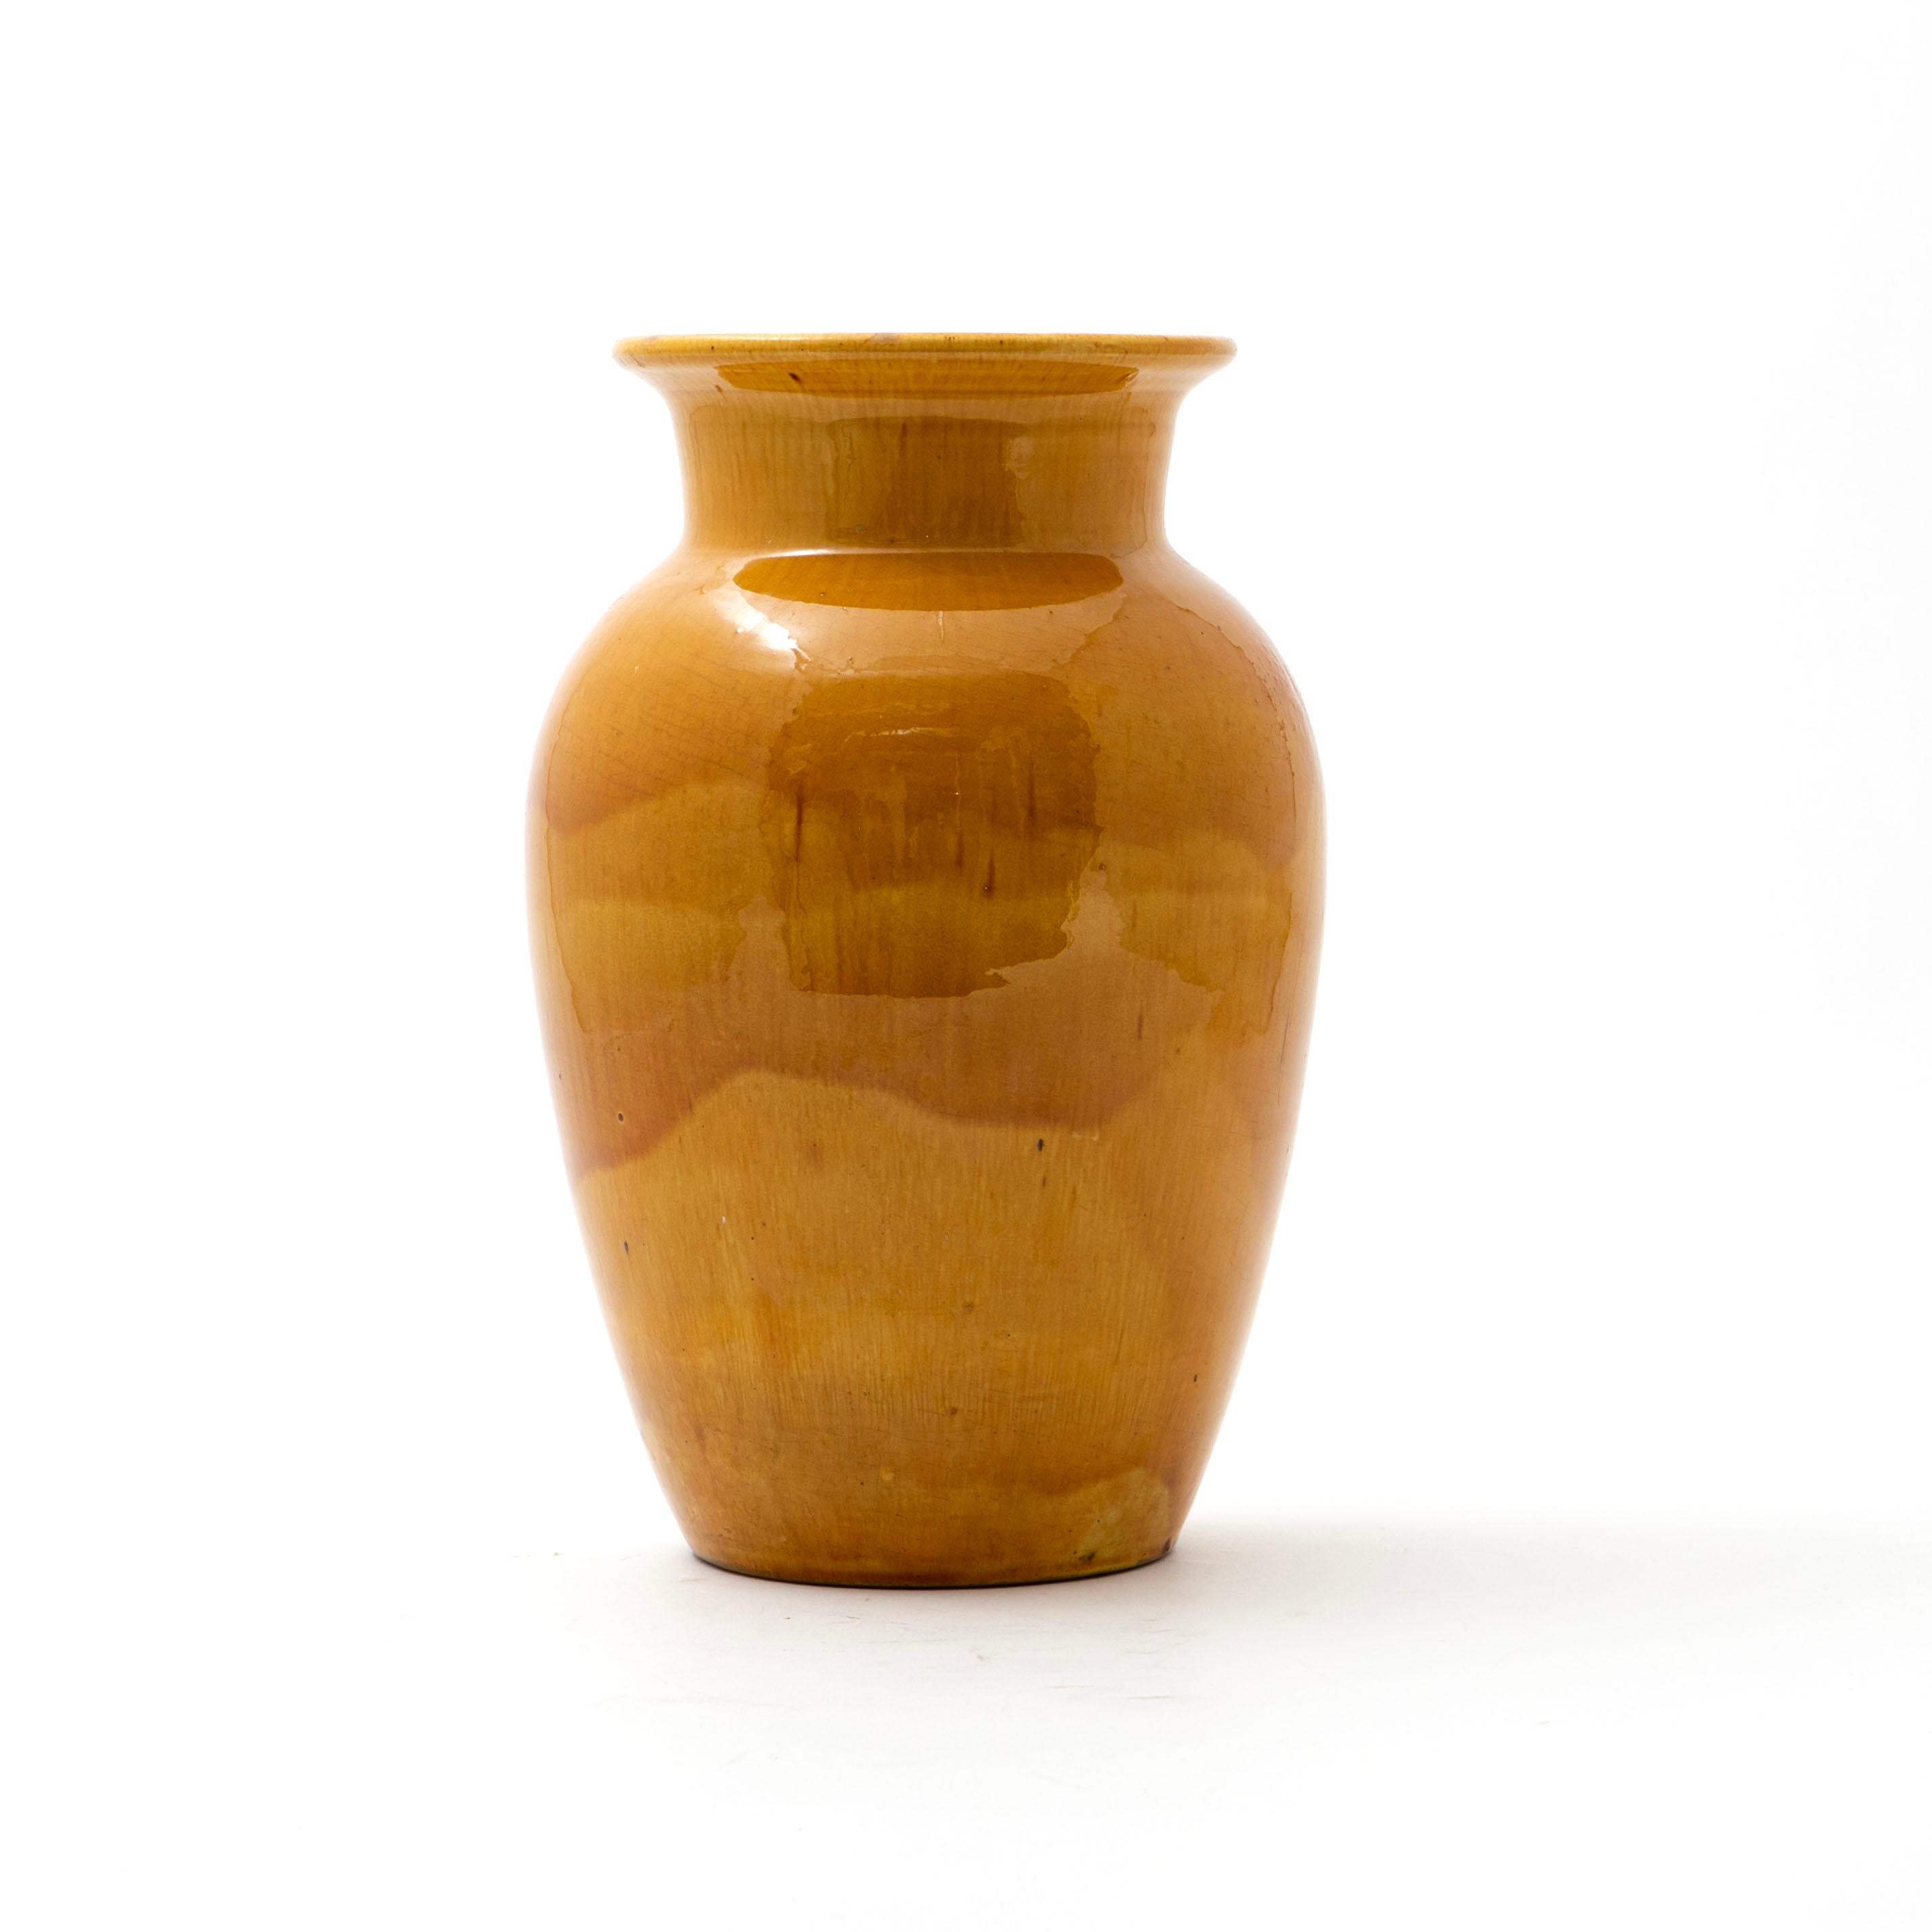 Vase Kähler en grès décoré d'une belle glaçure jaune soleil.
Hauteur : 31 cm.

Le vase porte une touche unique avec une tache plus sombre qui n'est pas un défaut mais qui fait partie du processus d'émaillage.
Non signé